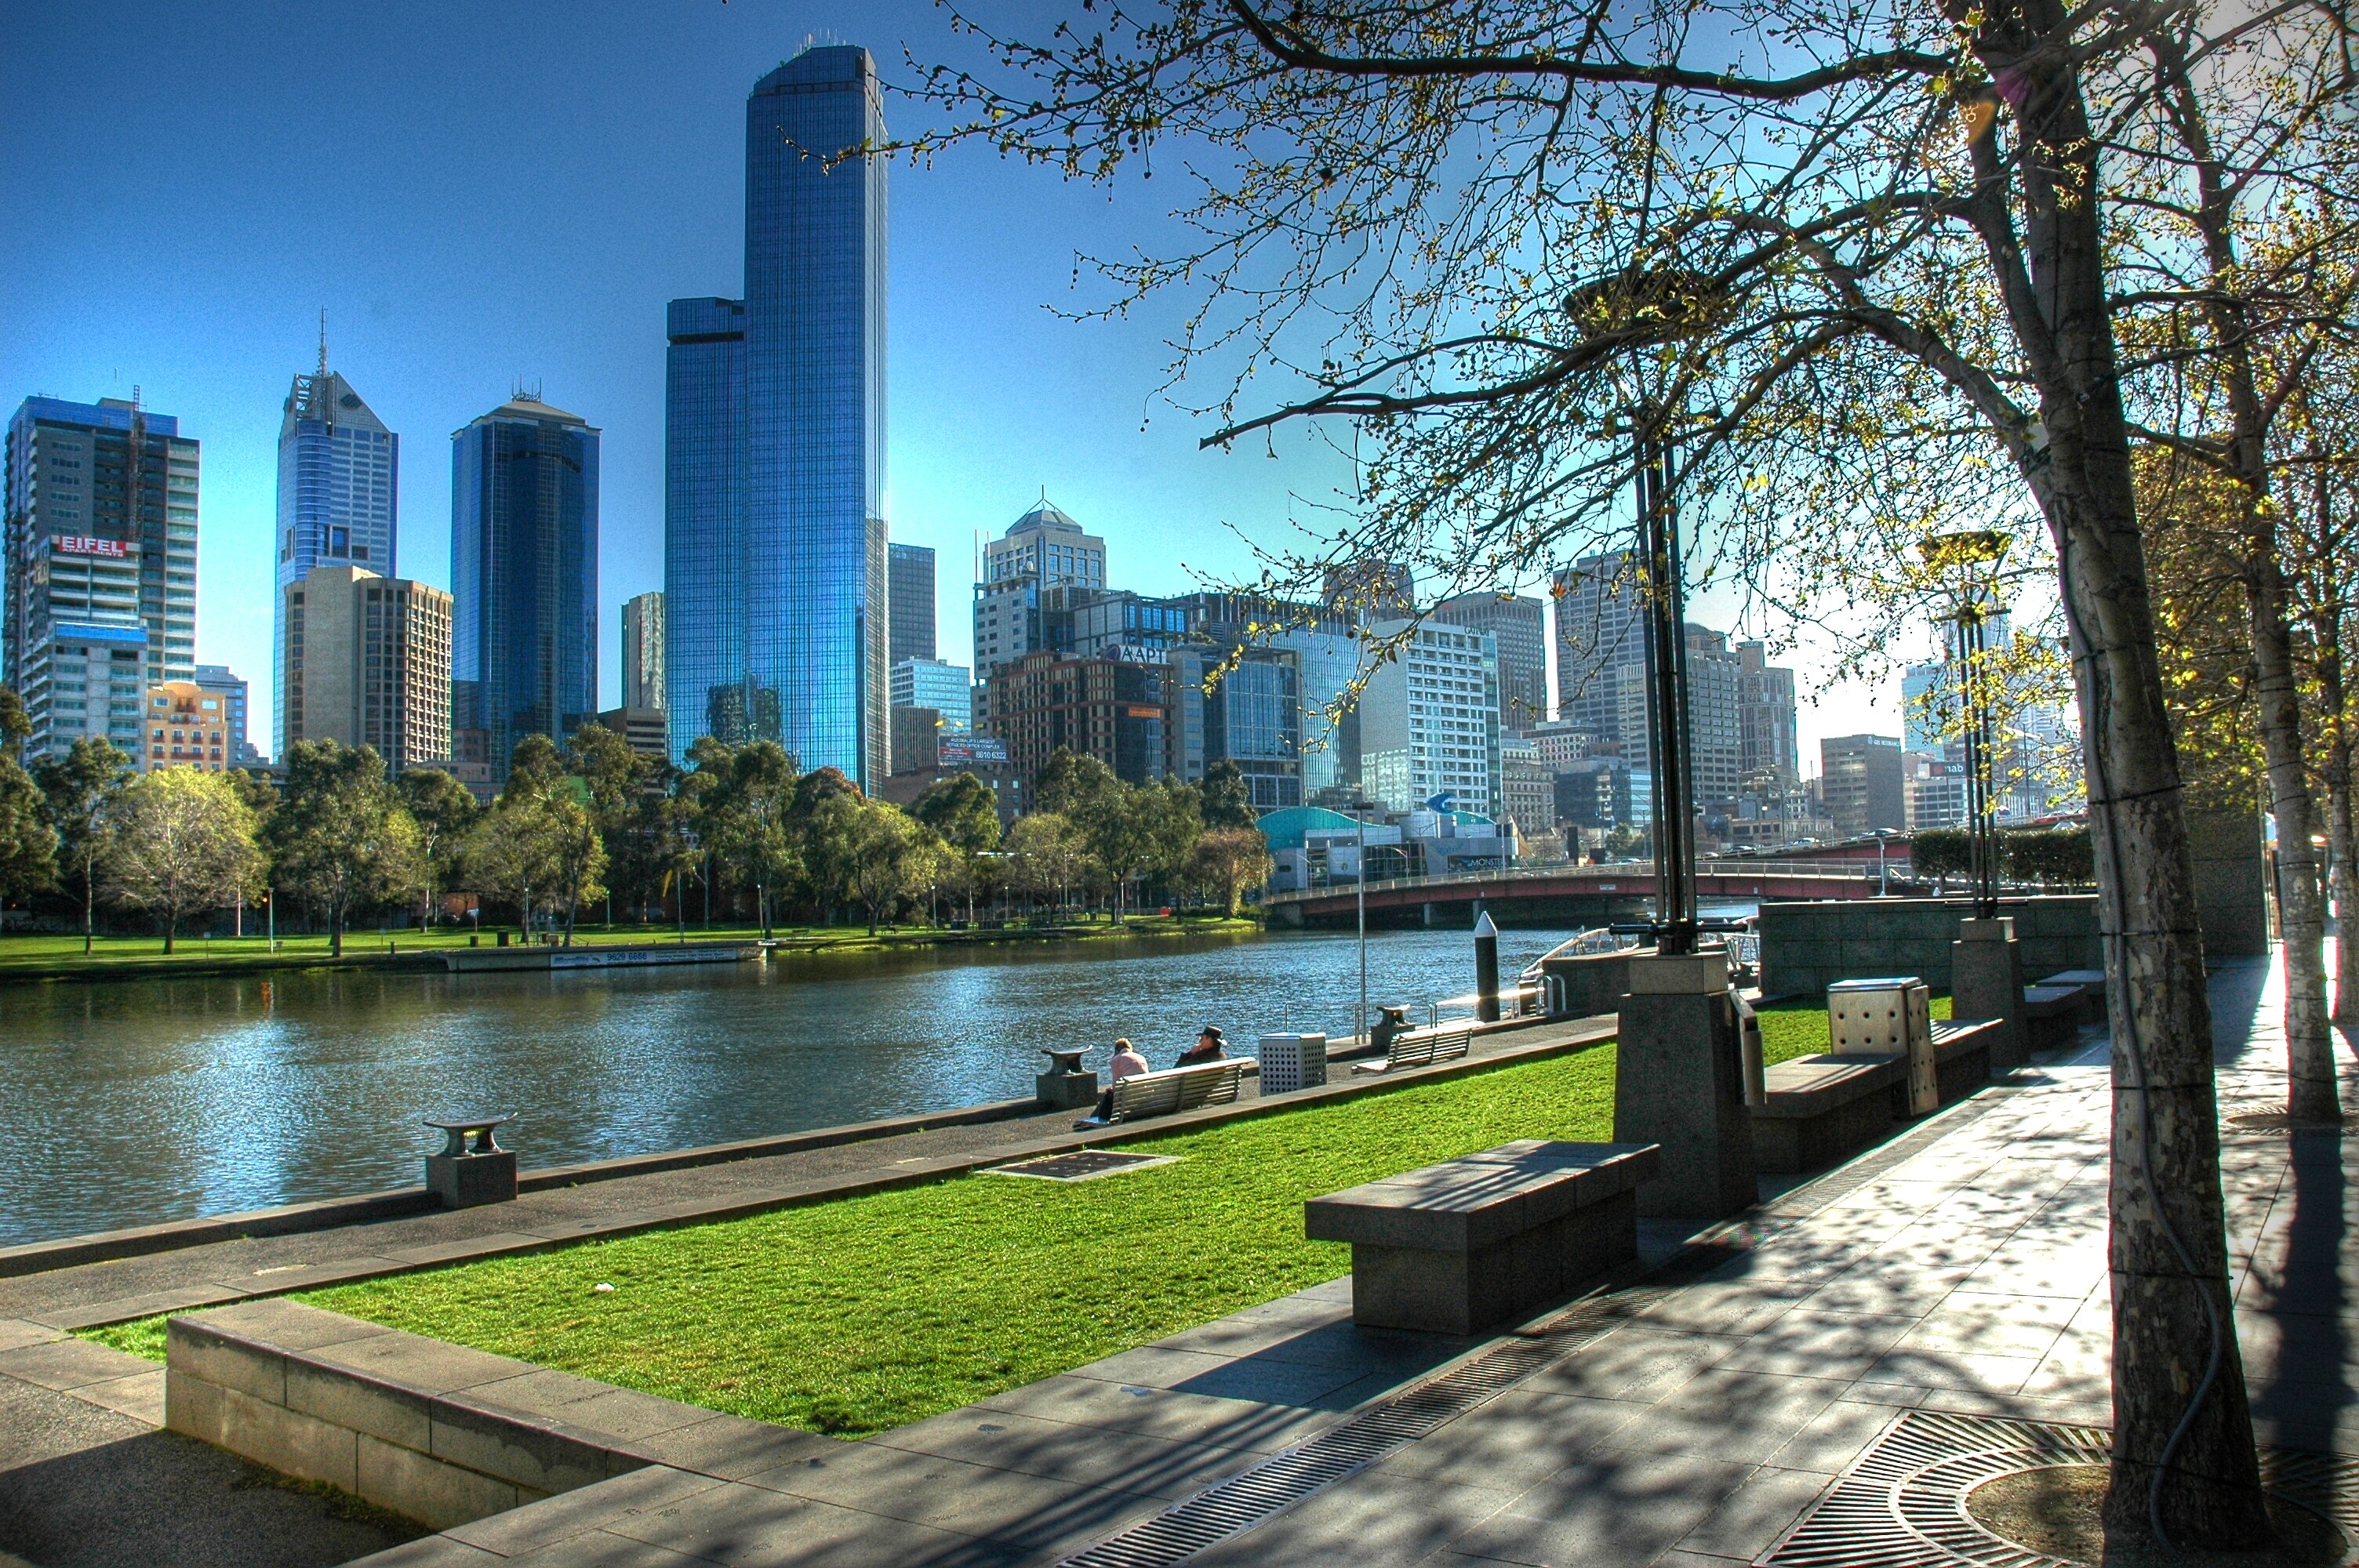 Le dieci migliori cose da fare gratis a Melbourne